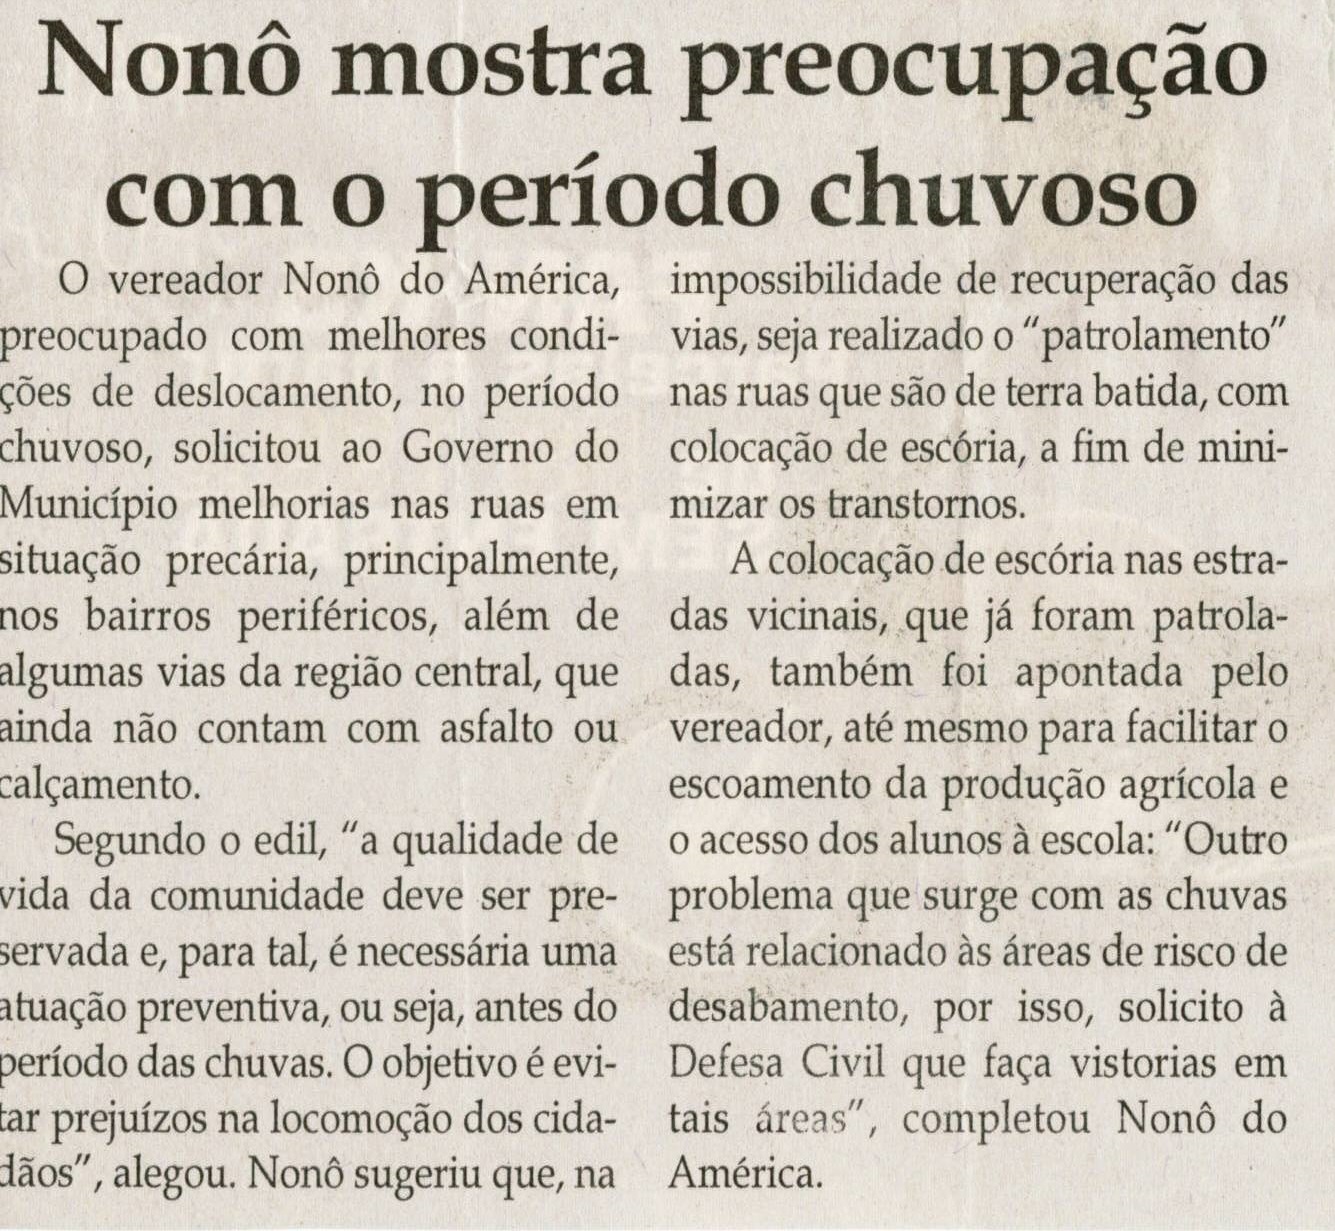 Nonô mostra preocupação com o período chuvoso. Jornal Correio da Cidade, Conselheiro Lafaiete, 16 out. 2010, p.4.